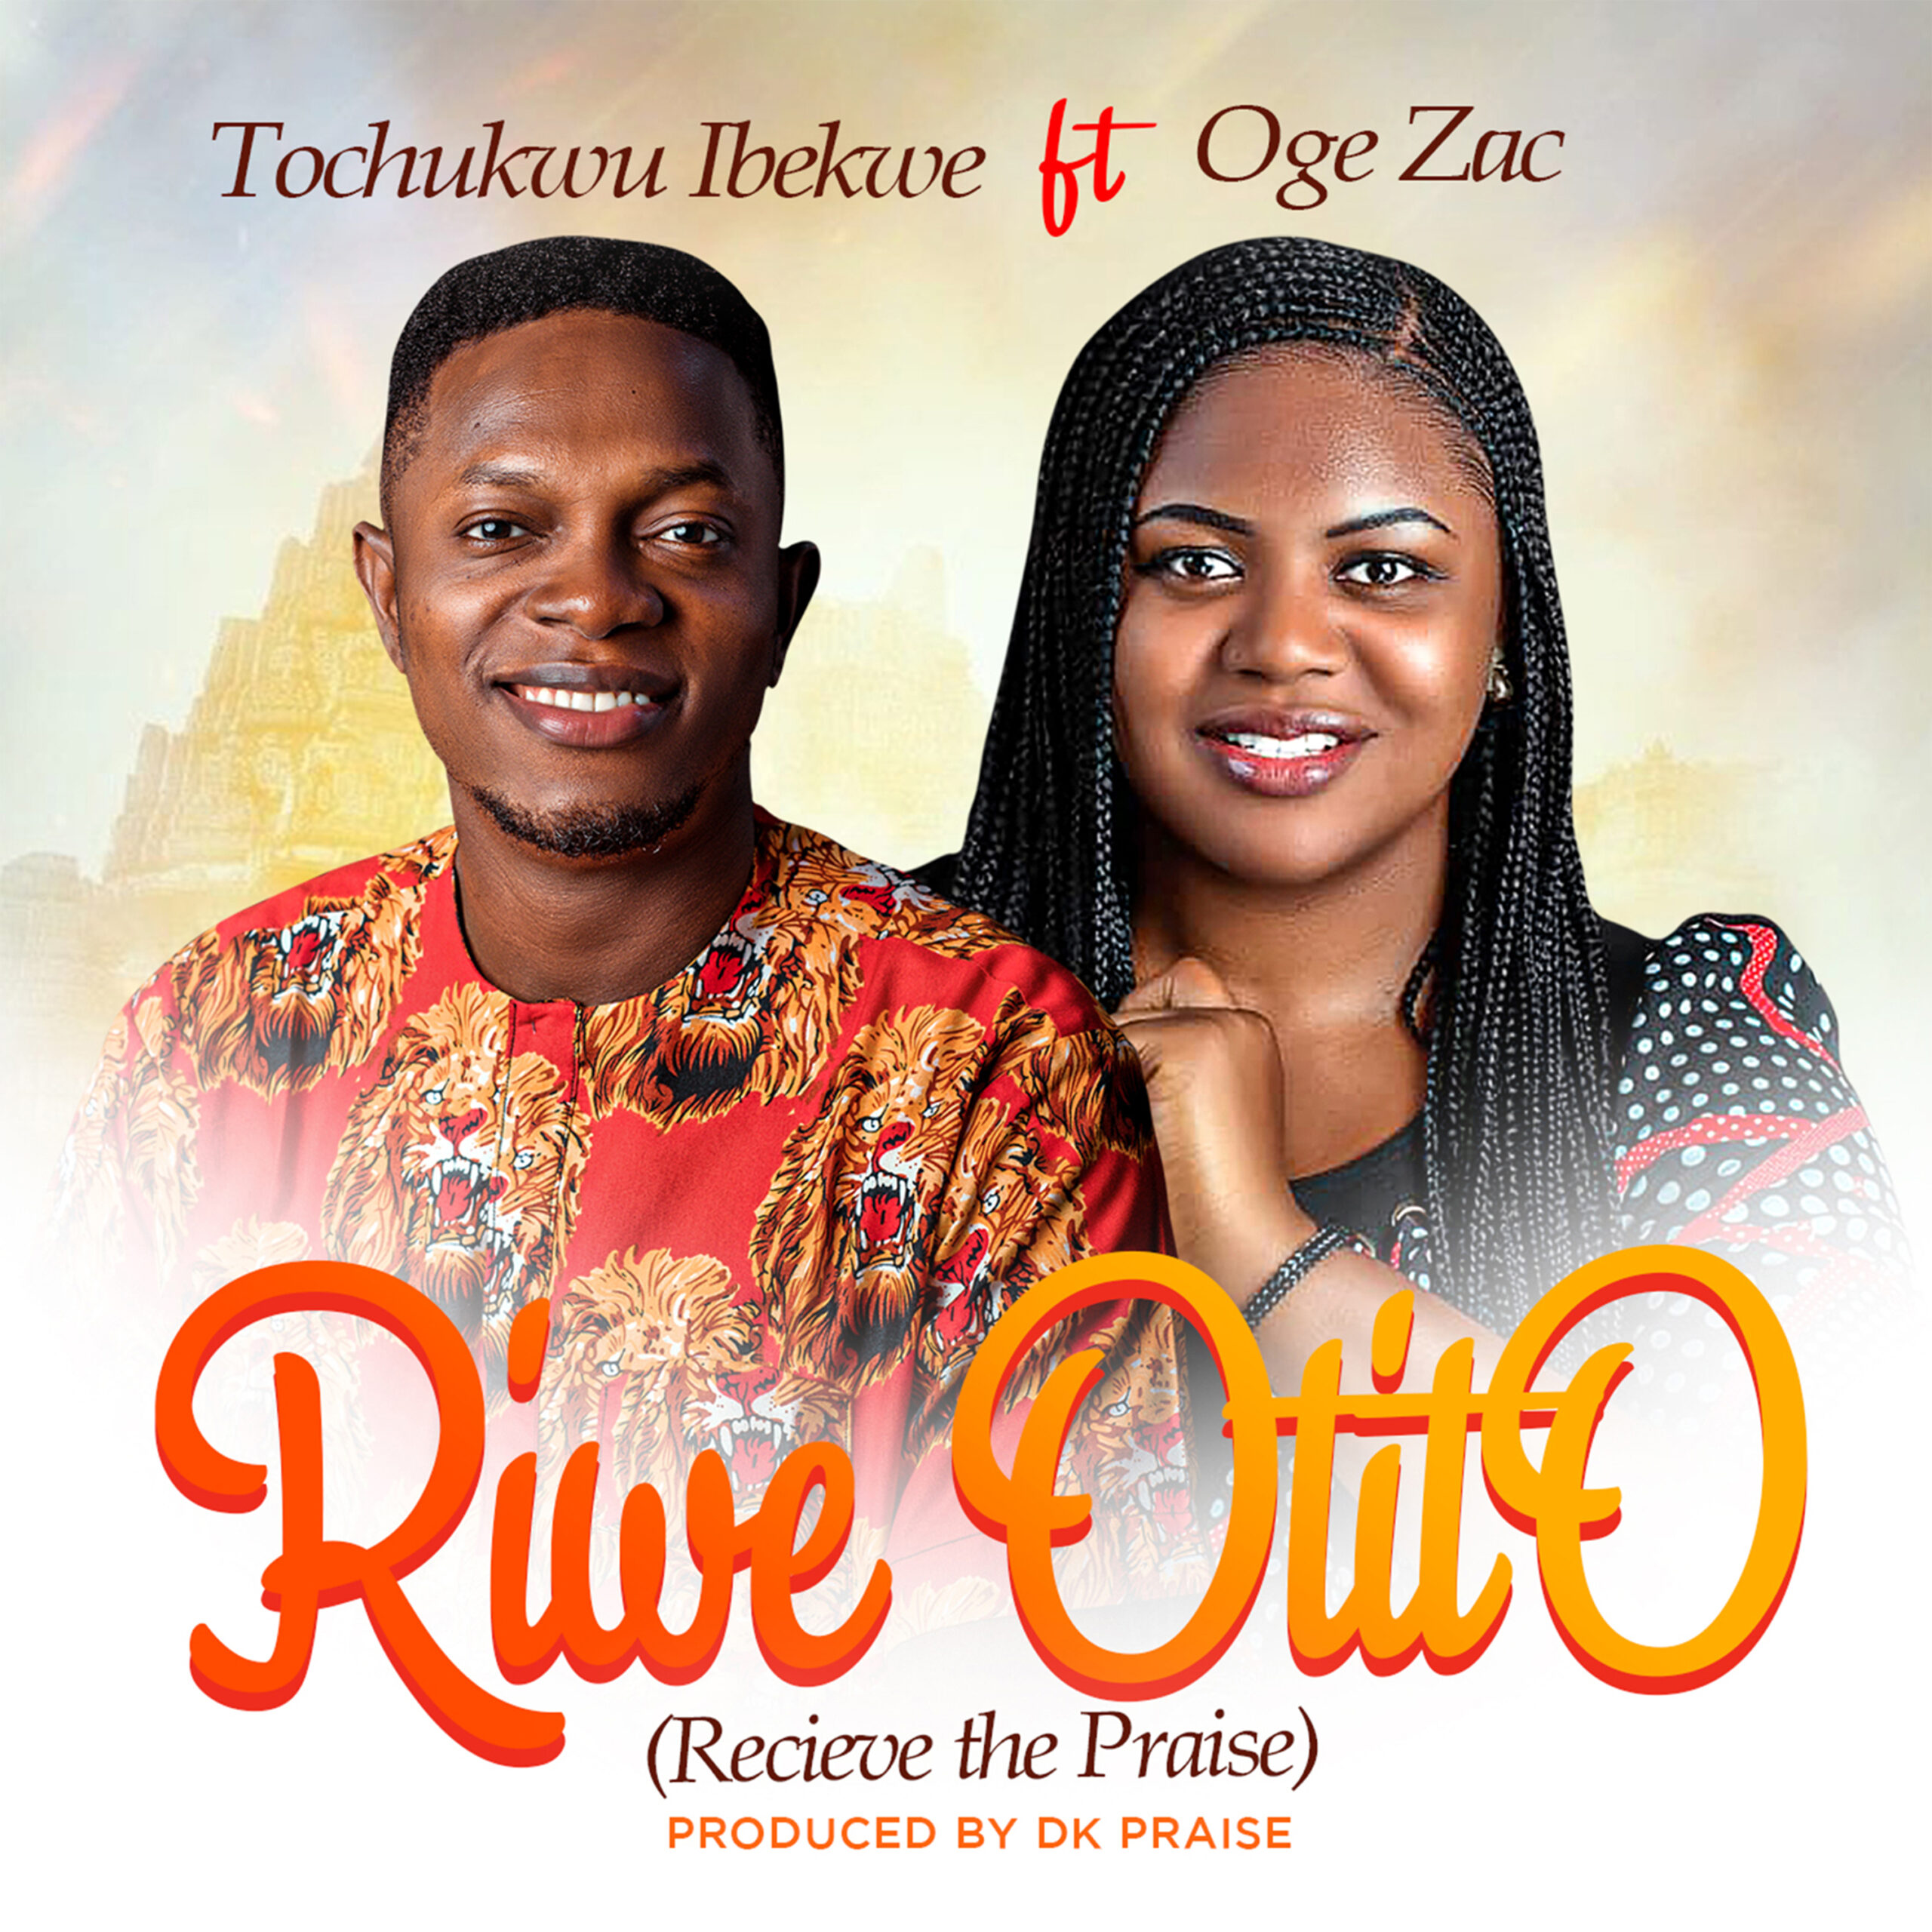 RIWE OTITO (Recieve the Praise) Tochukwu Ibekwe feat. Oge Zac